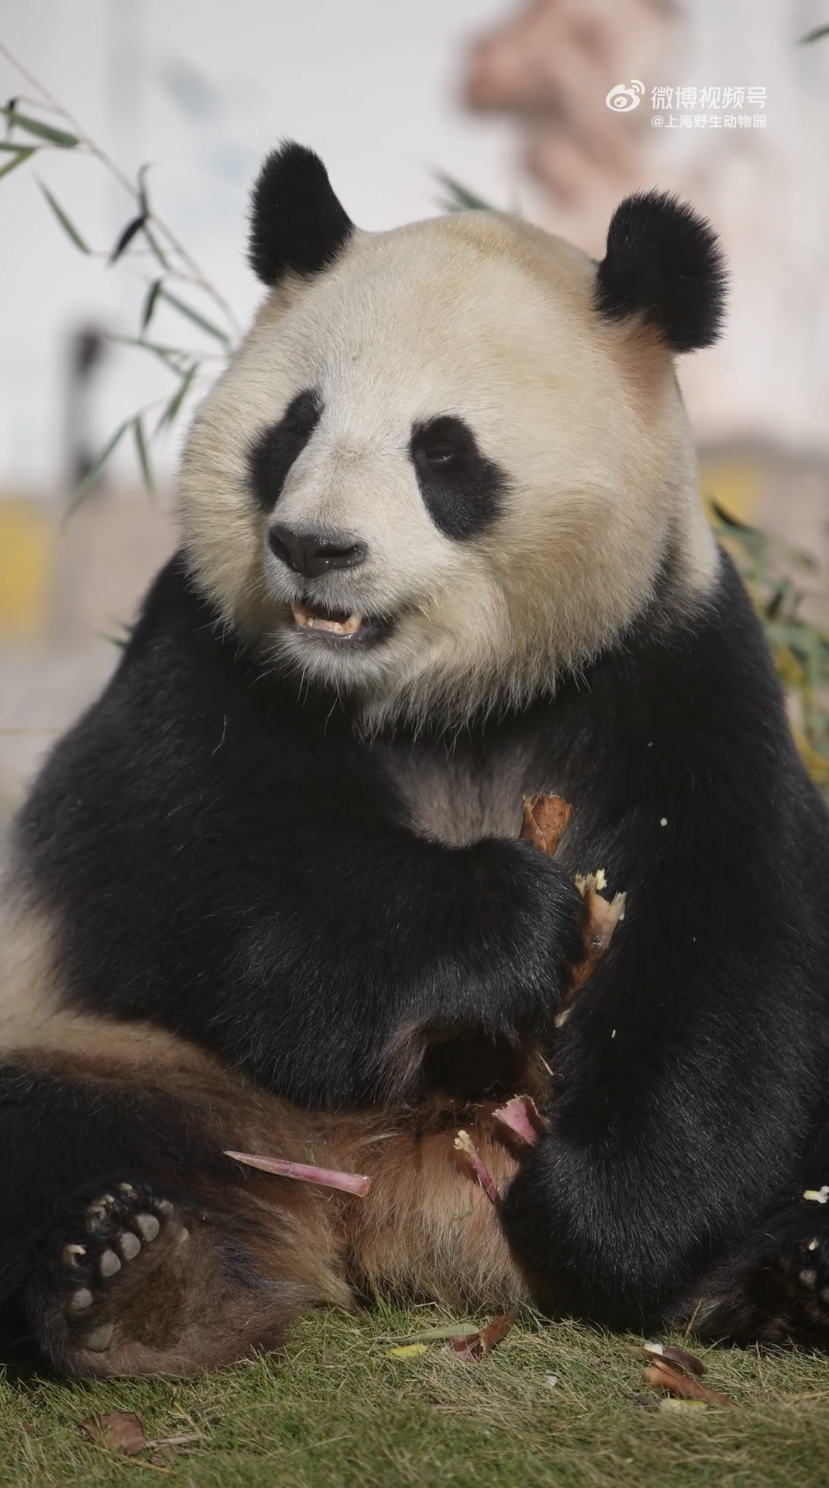 大熊猫「七七」吃笋子。网上图片